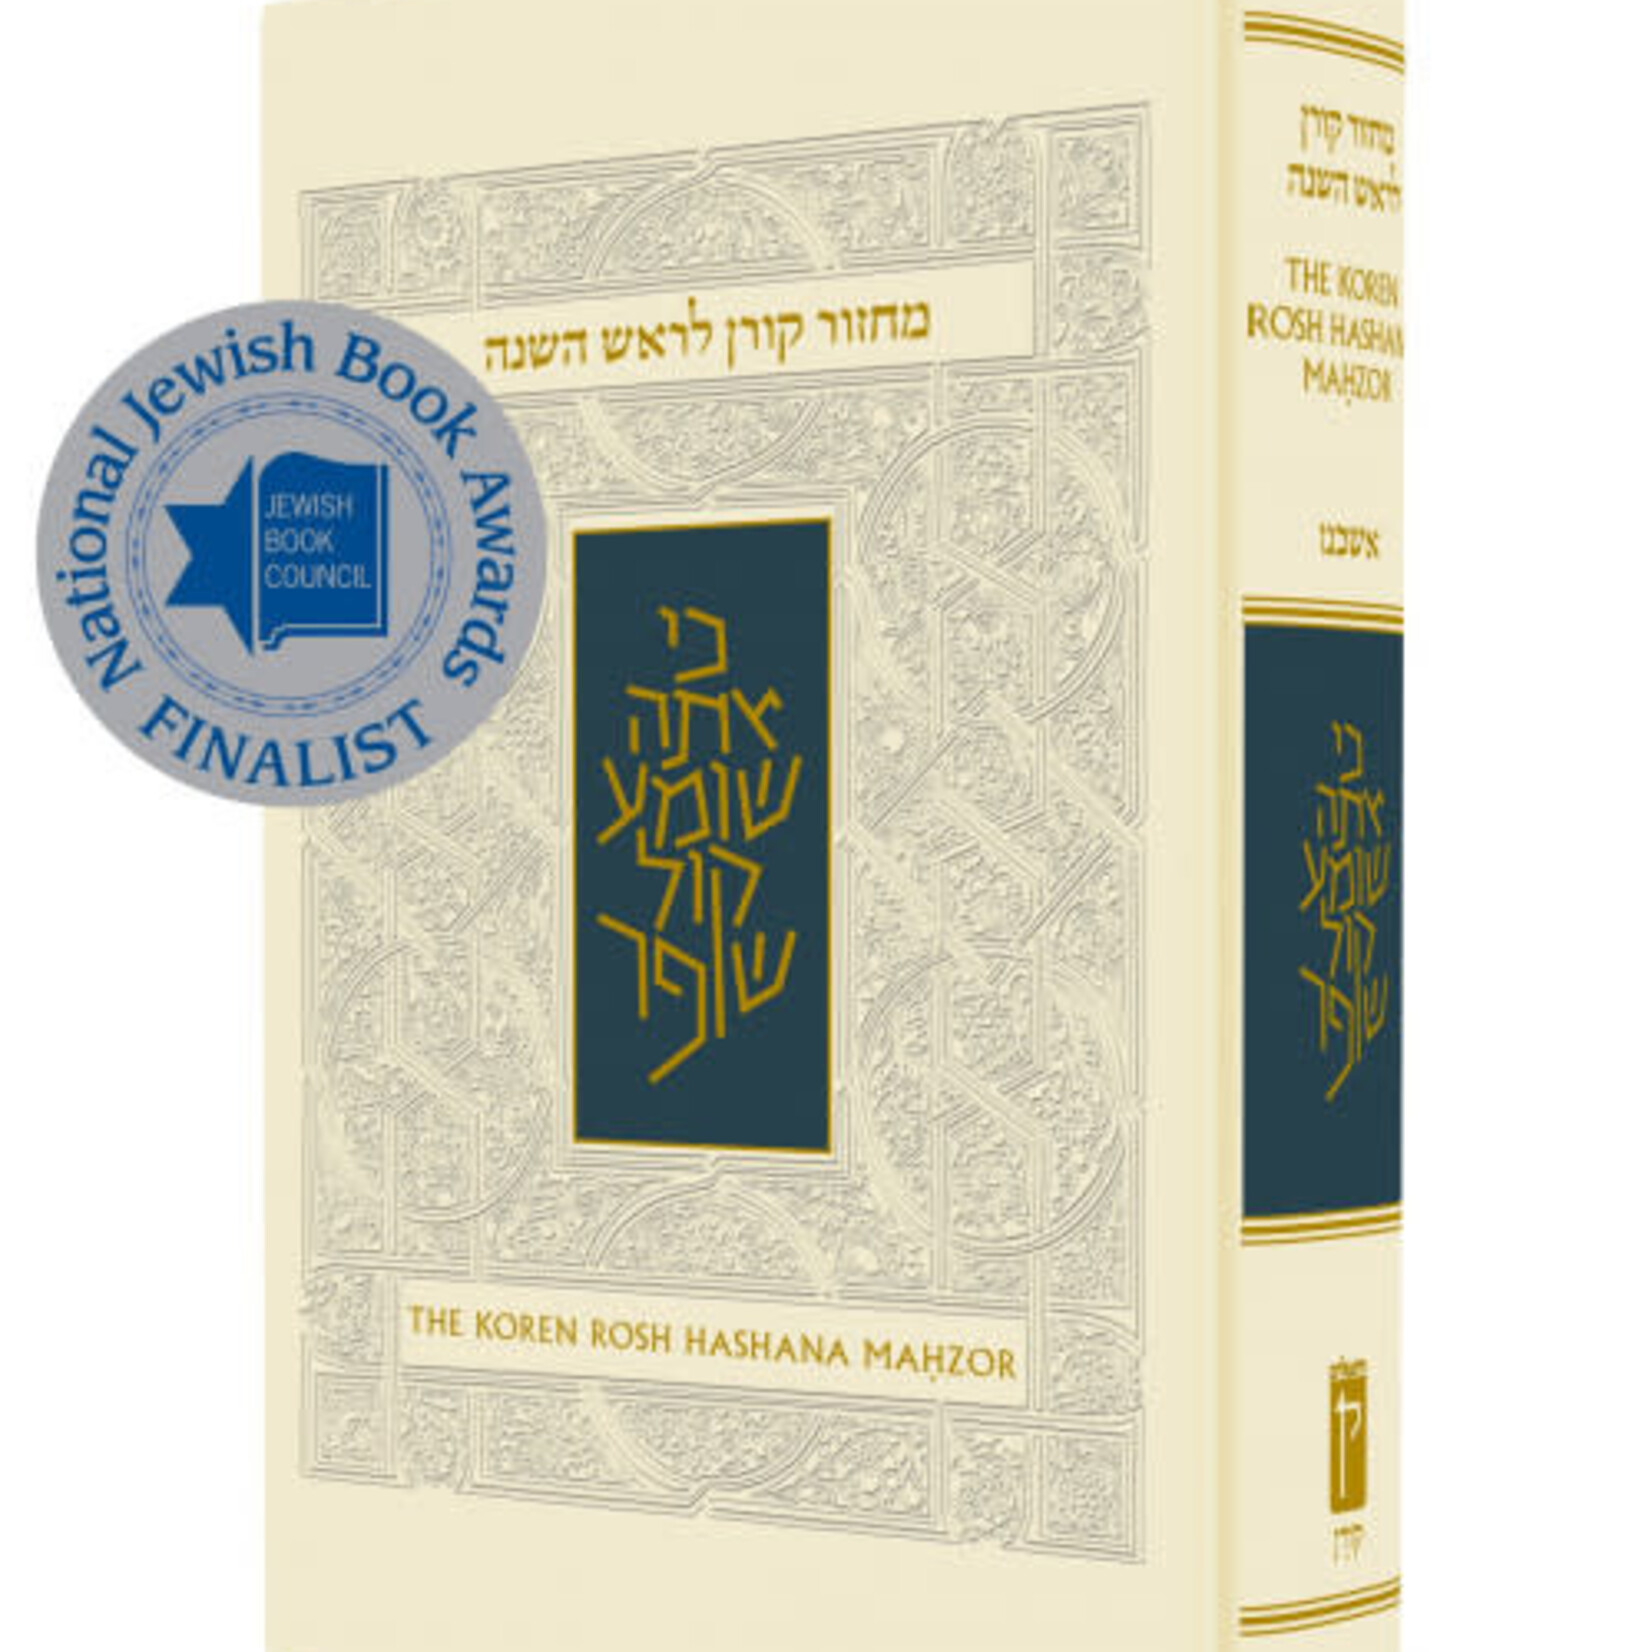 The Koren Sacks Rosh HaShana Mahzor - Compact